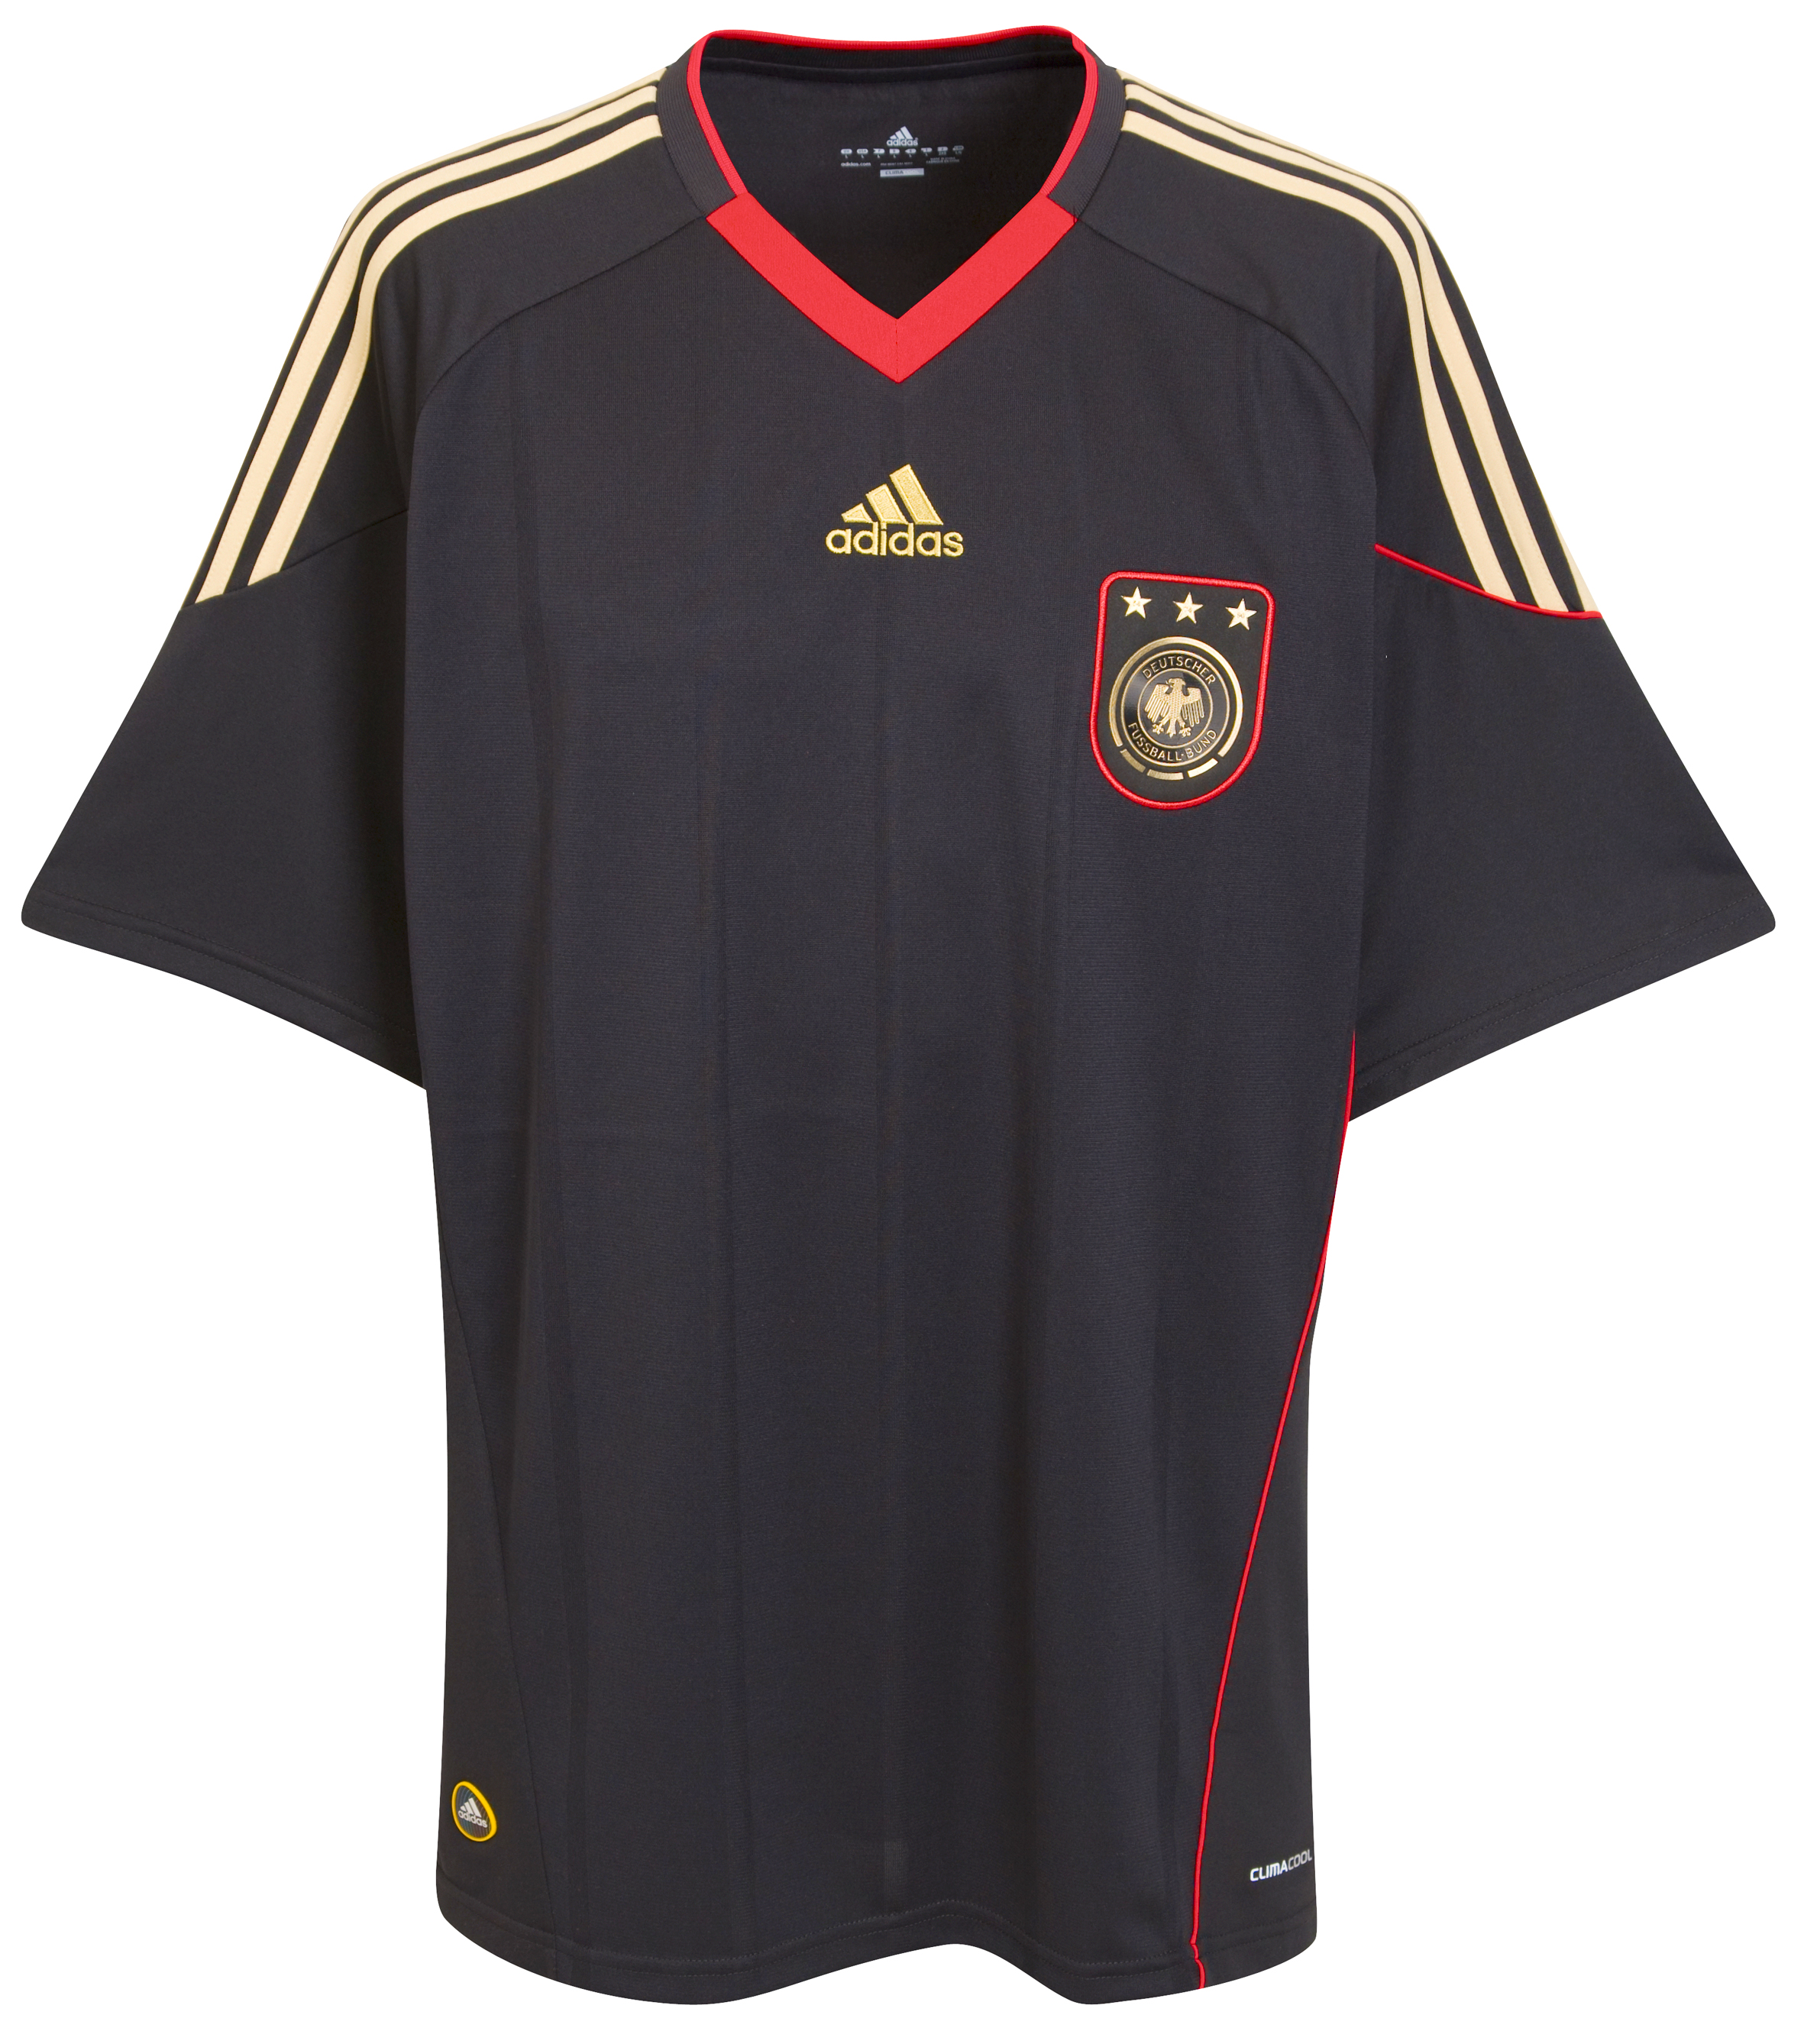 الملابس النهائيه لكأس العالم (2010)بجنوب افريقيا Kb-66936